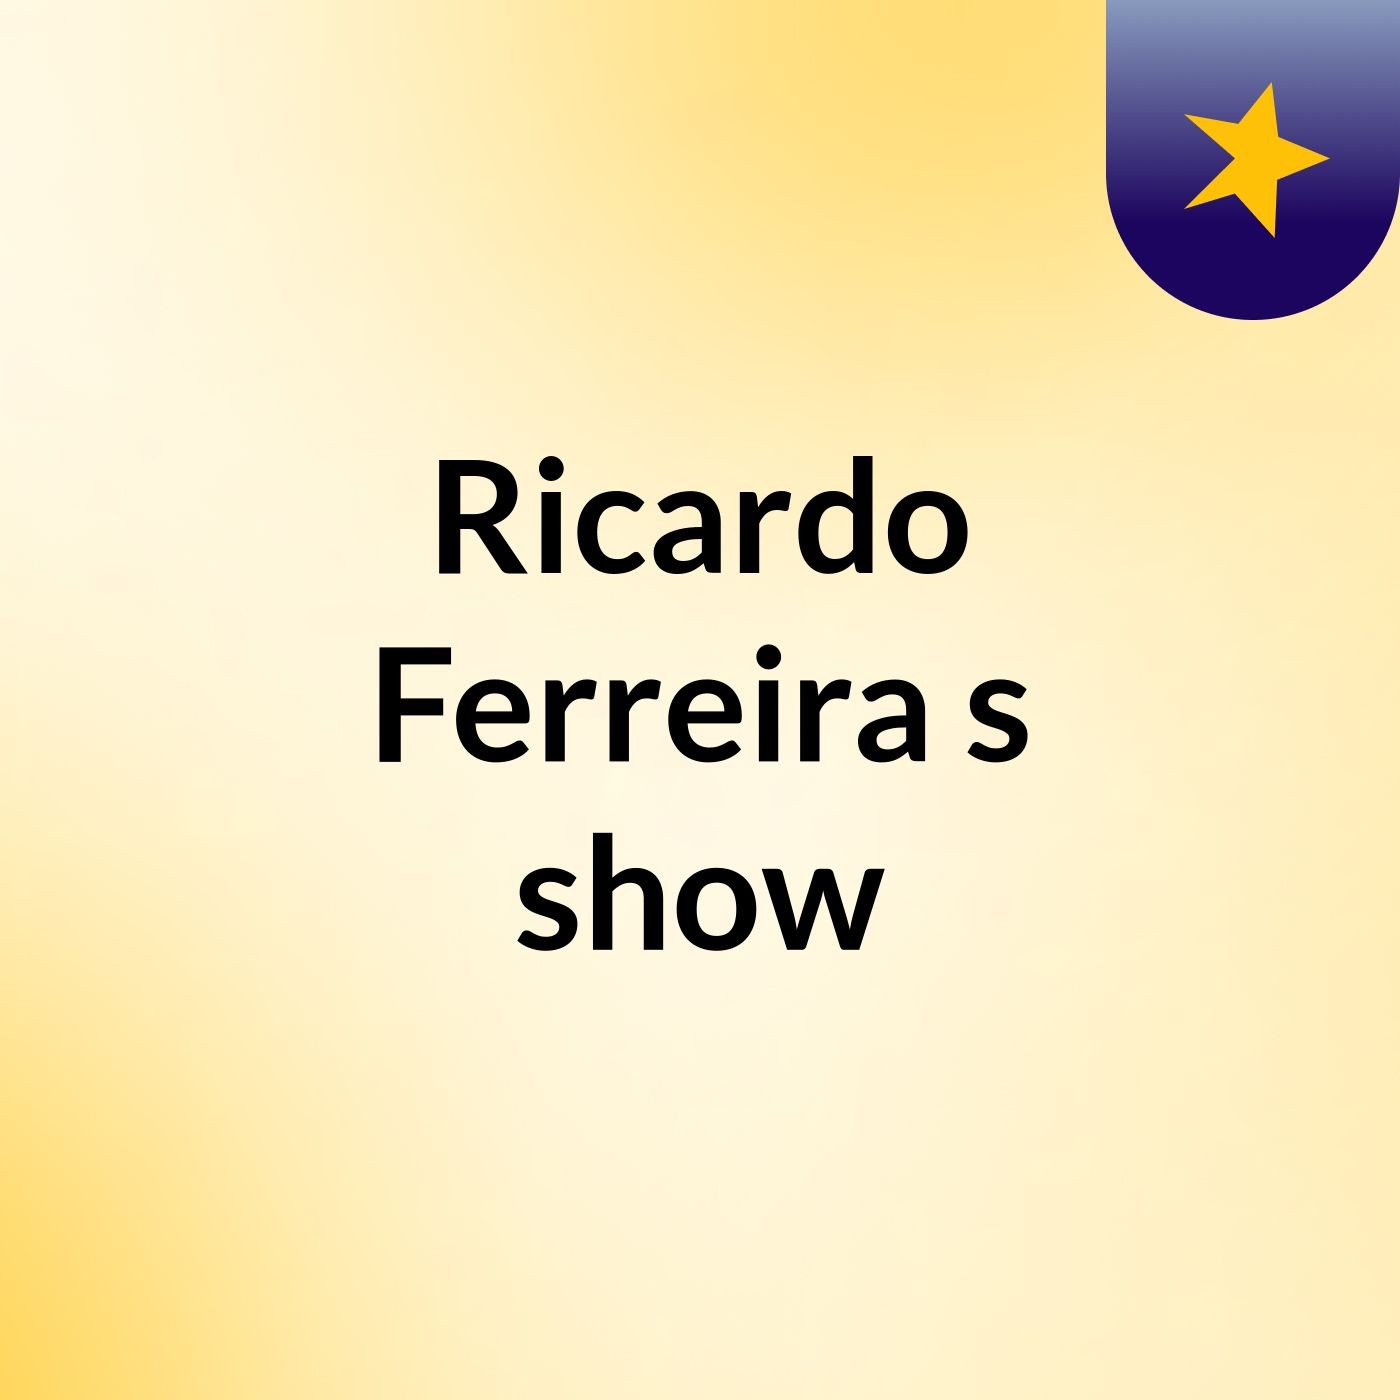 Ricardo Ferreira's show